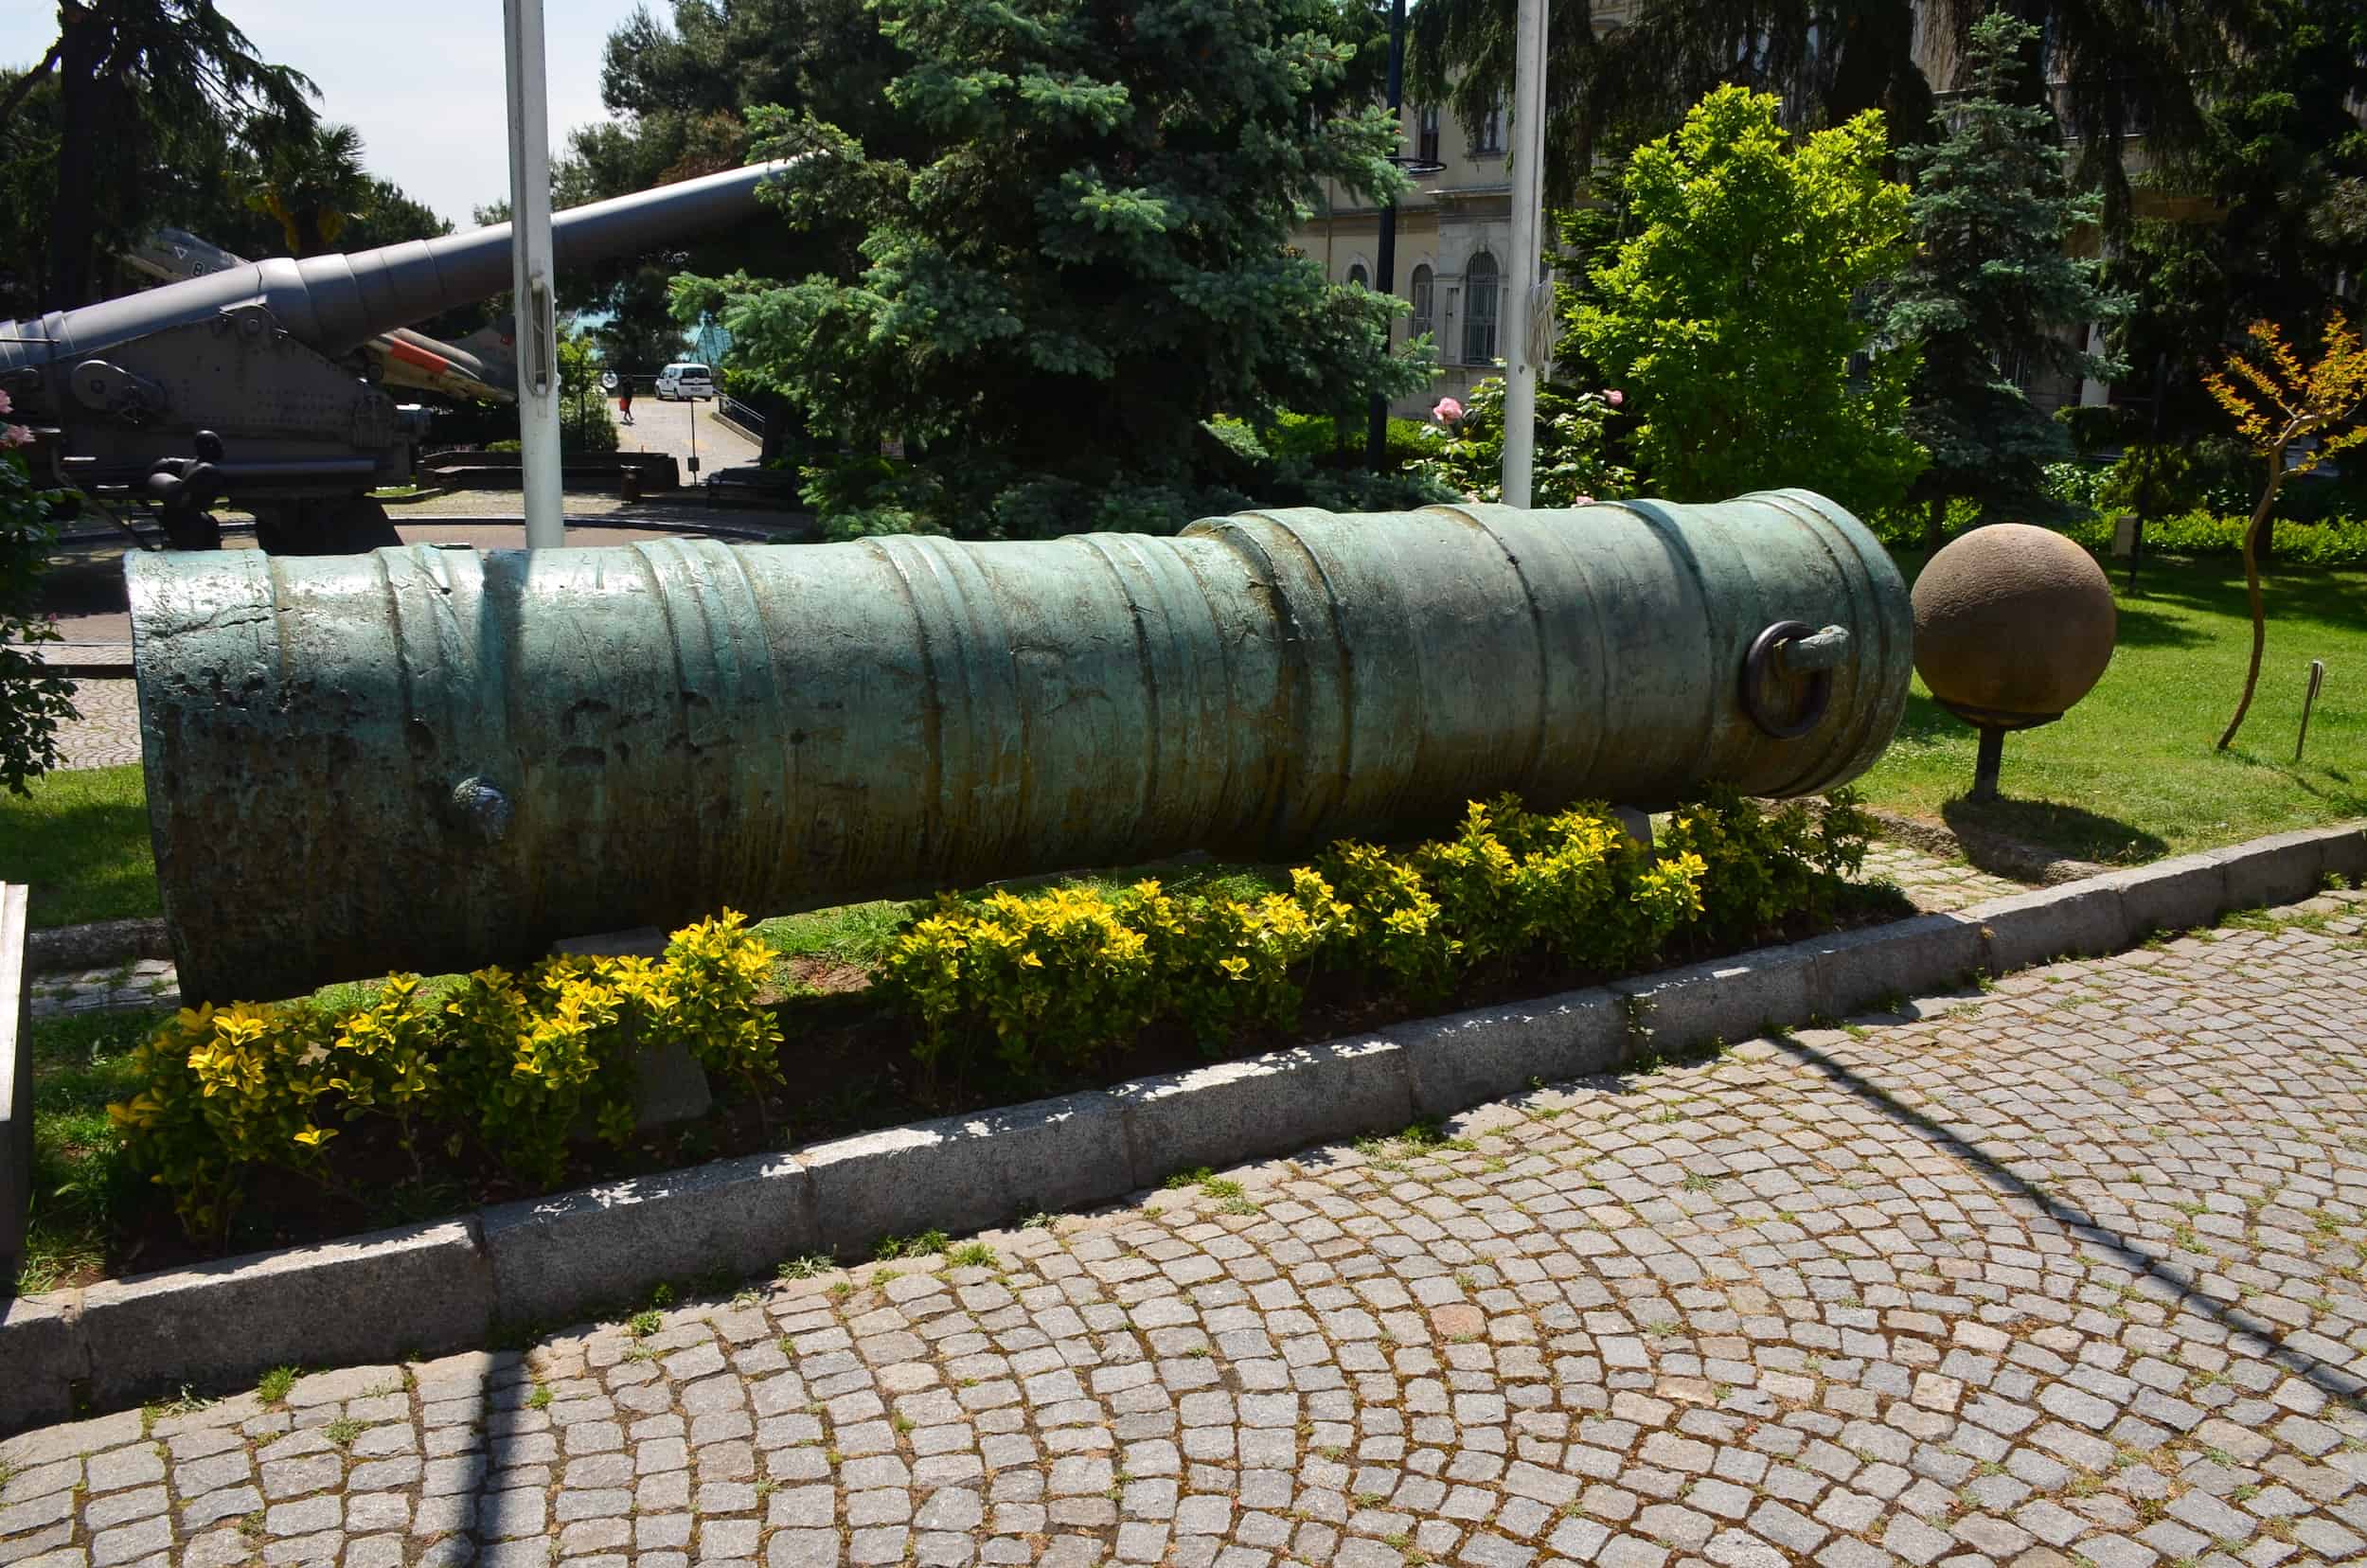 15th century Ottoman bronze cannon